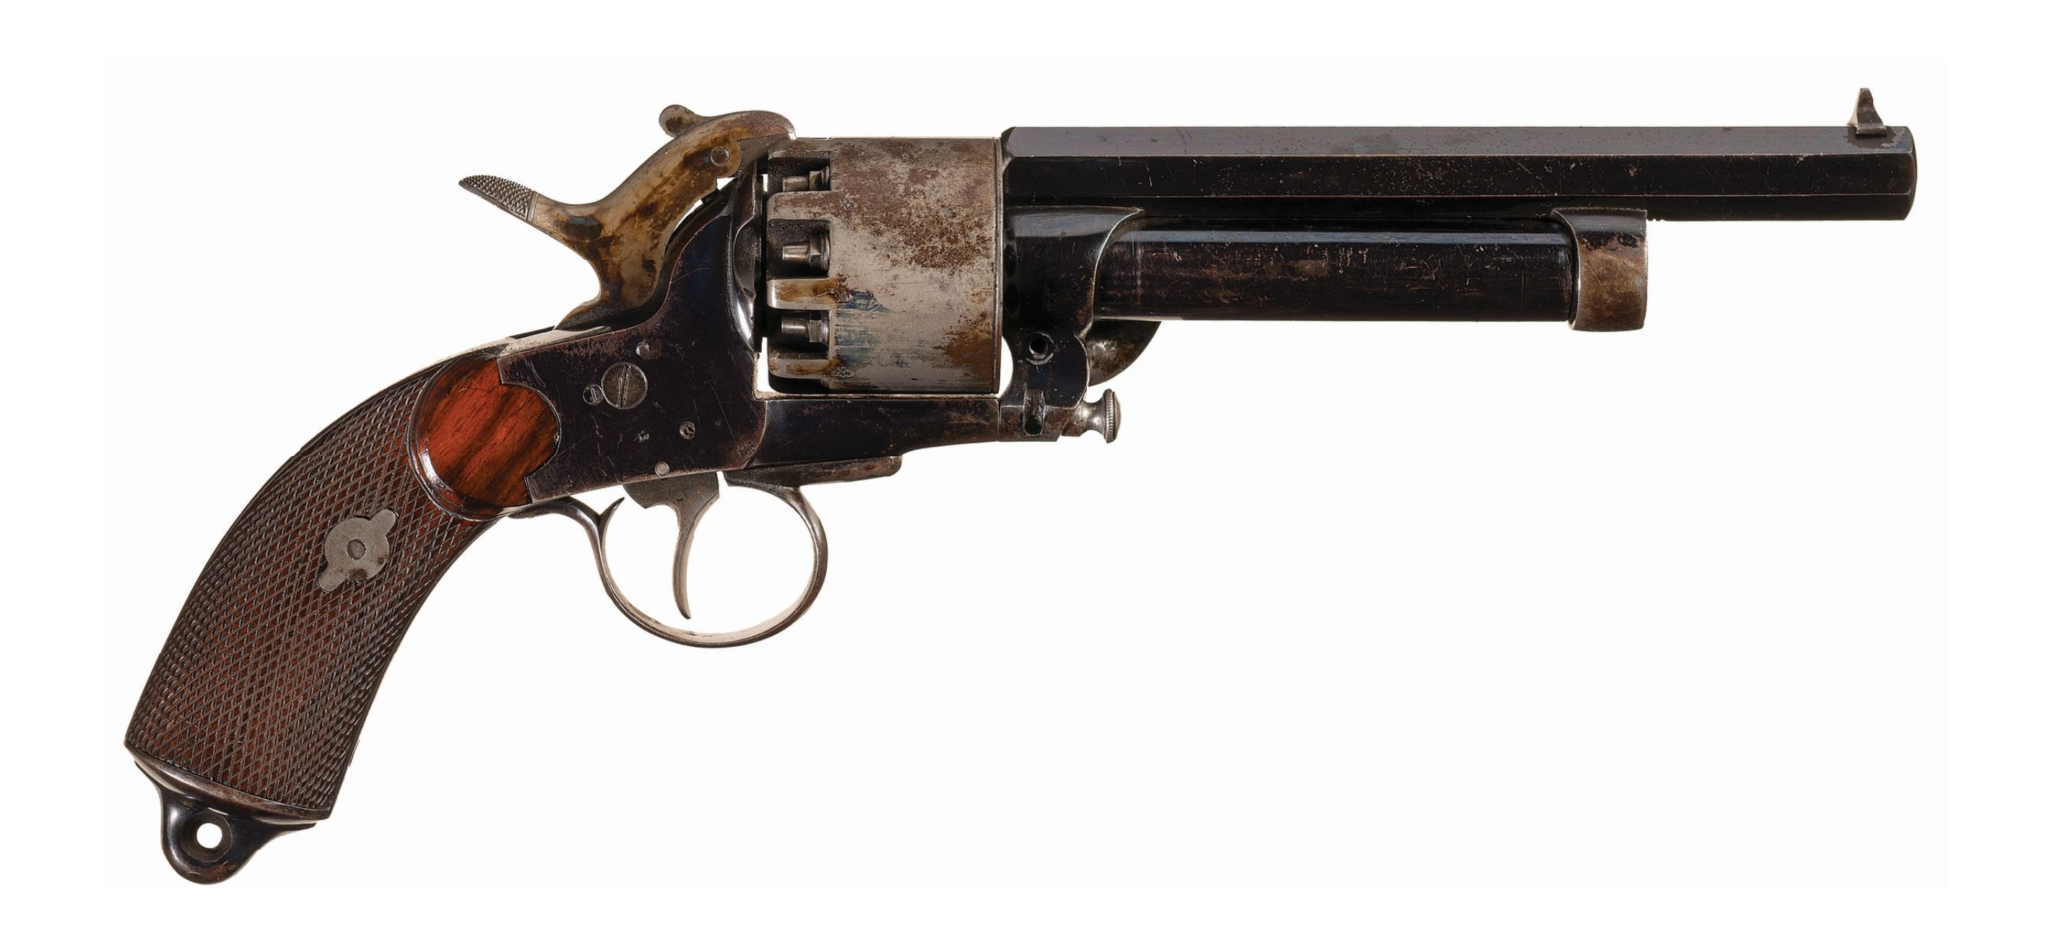 The LeMat Revolver Was a Civil War-Era Pistol That Doubled as a Shotgun